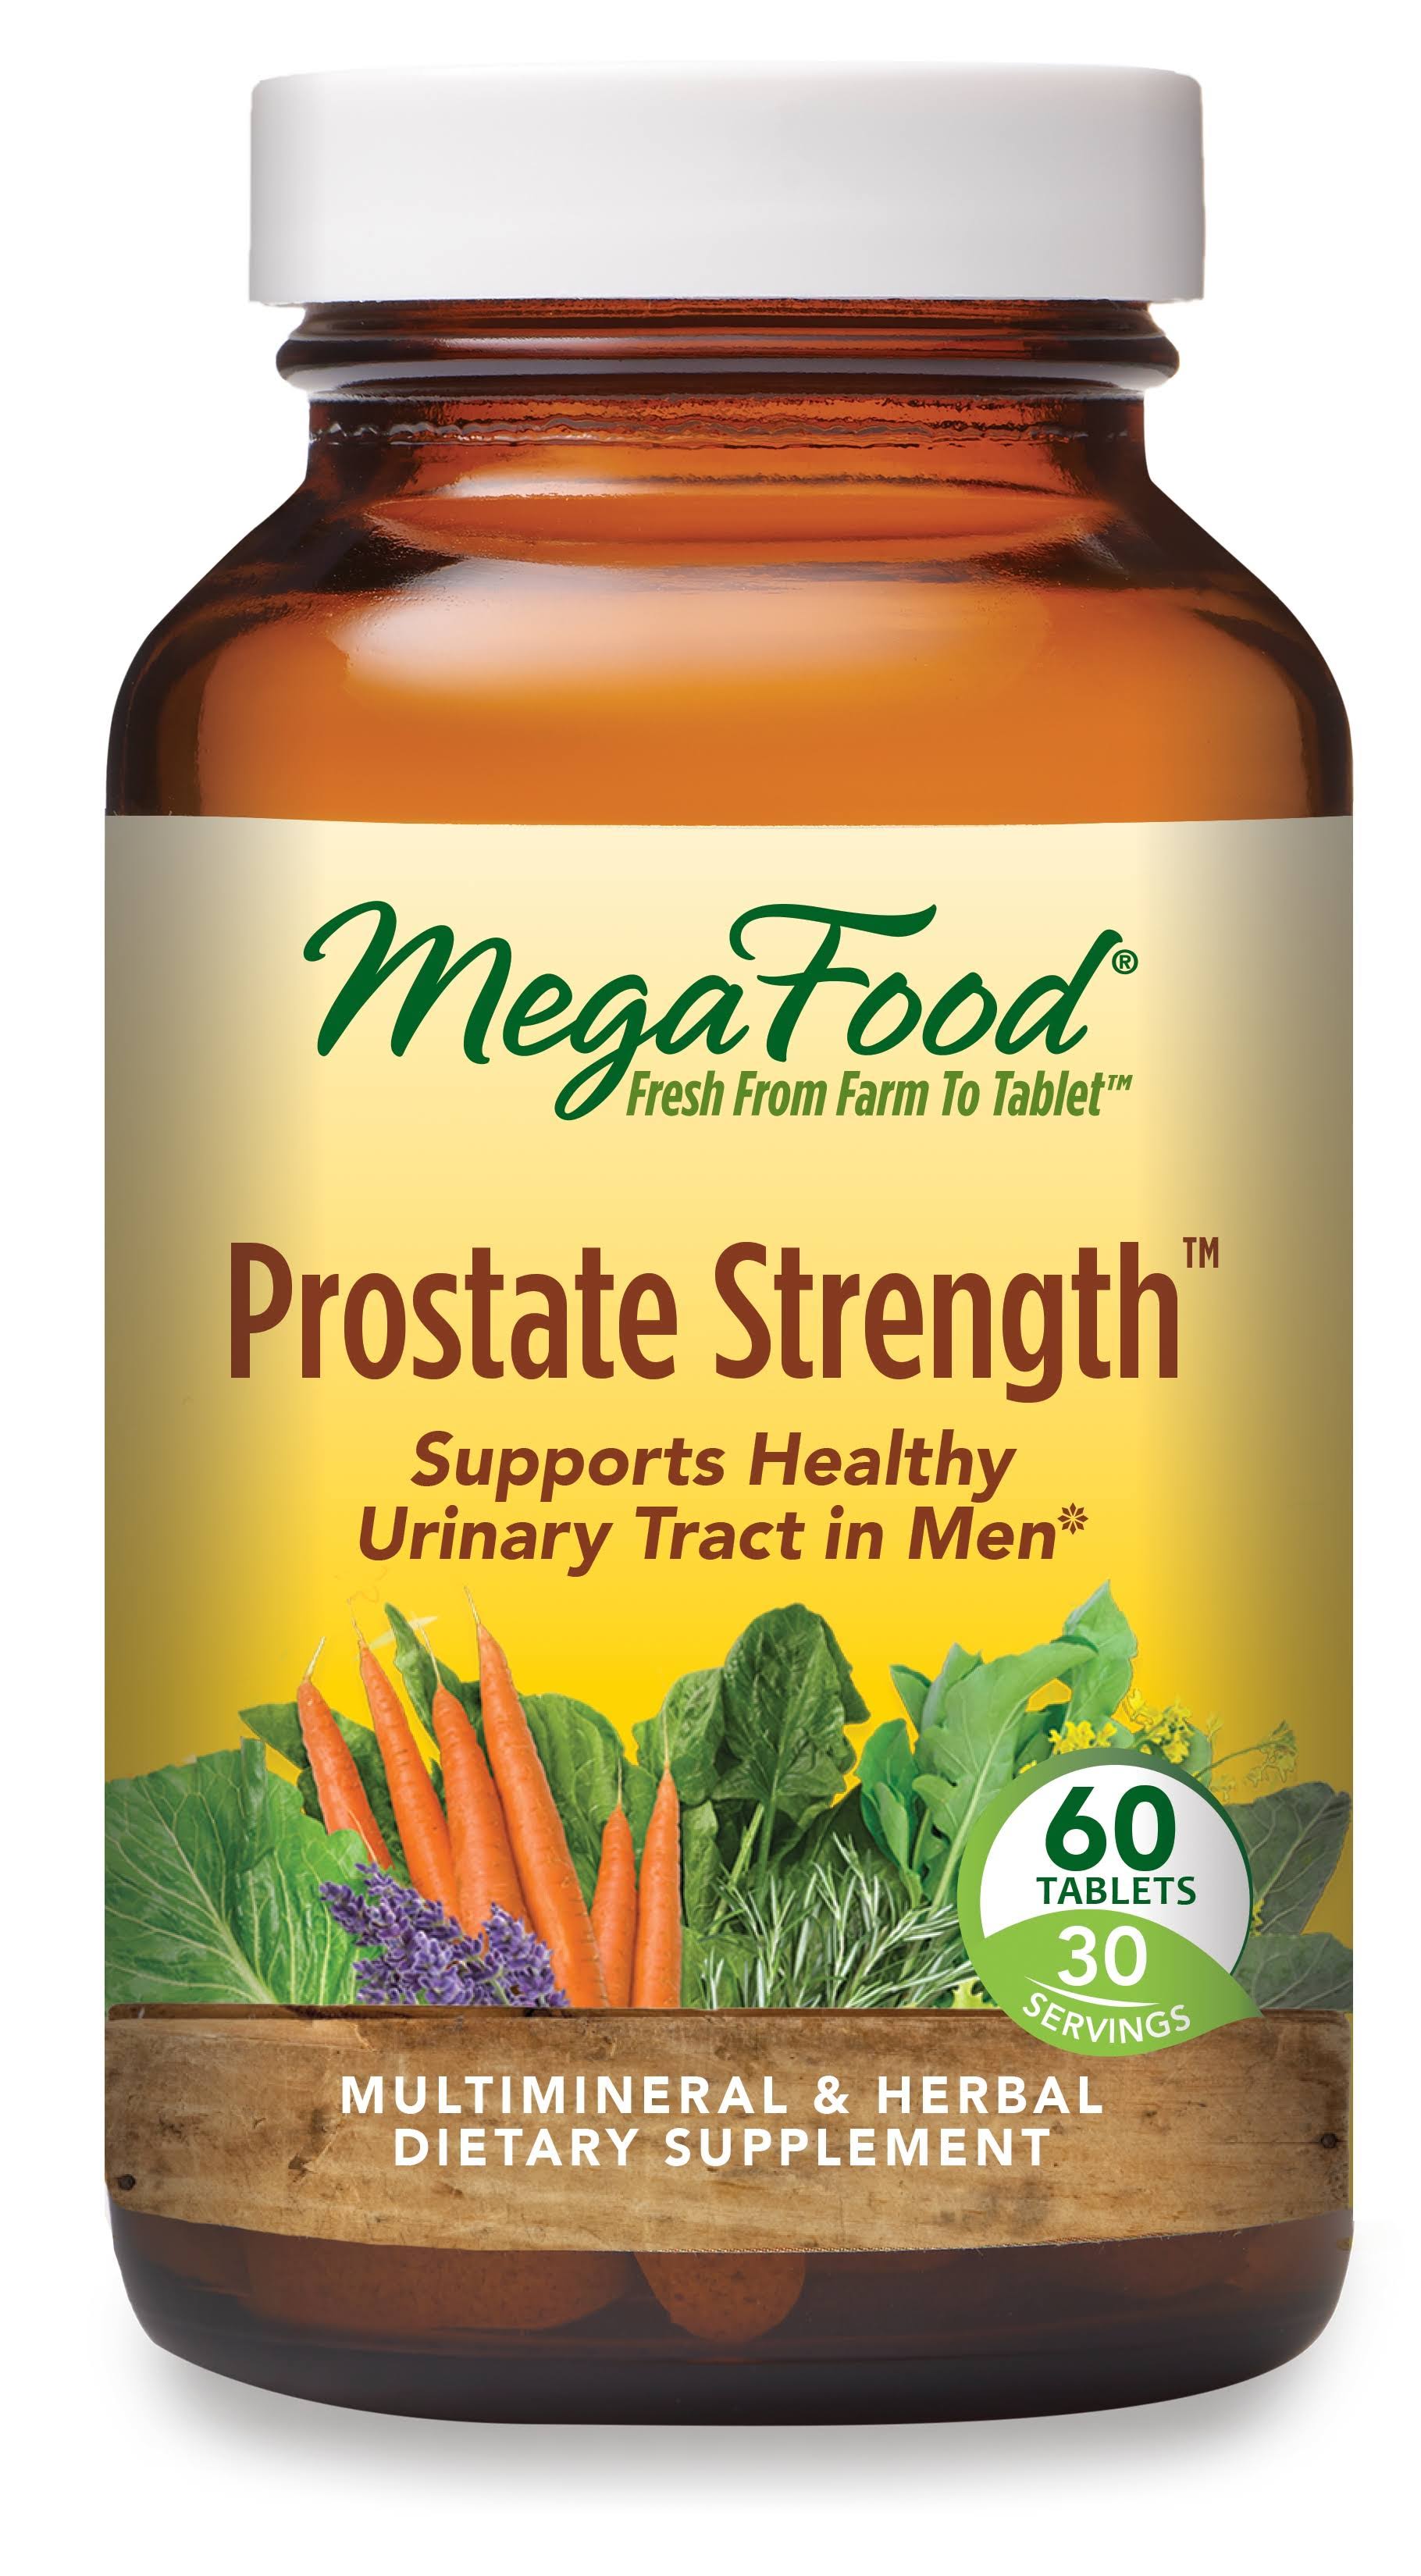 MegaFood Prostate Strength Supplement - 60 Tablets